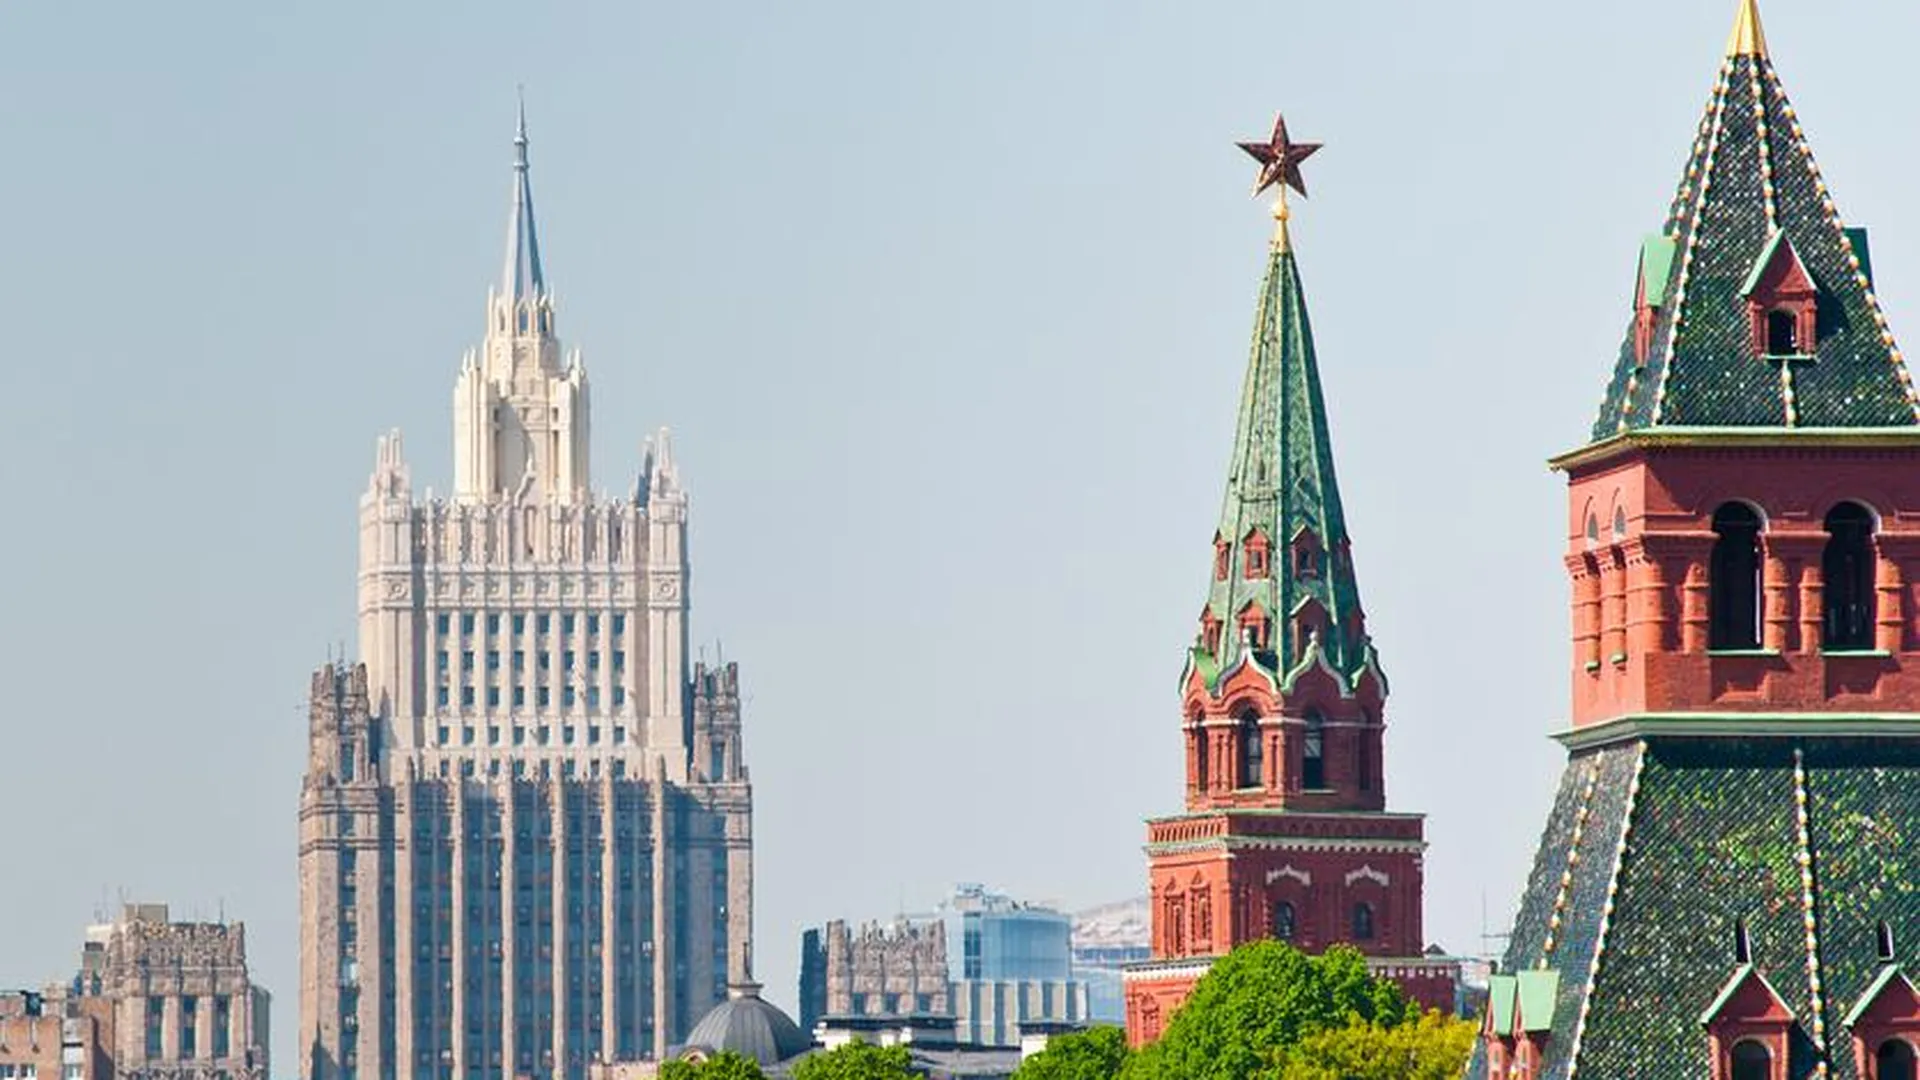 МИД России: курс Запада вынуждает РФ усилить меры ядерного сдерживания